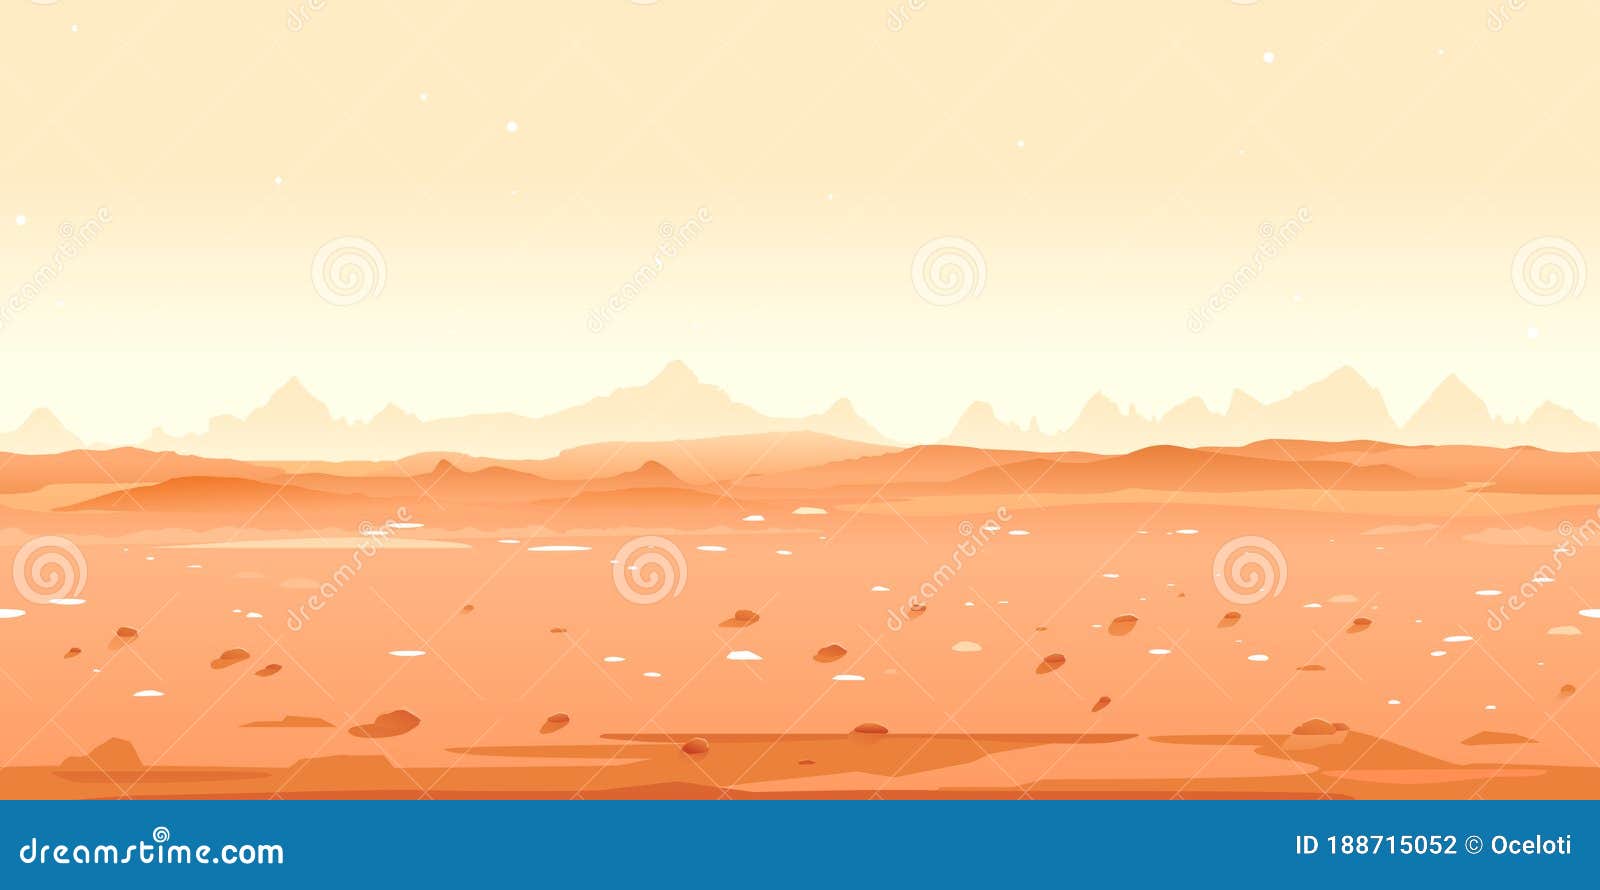 Sao Hỏa Sa mạc là sự kết hợp đẹp mắt giữa sa mạc và vũ trụ. Với những hình ảnh độc đáo của Sao Hỏa, bạn sẽ khám phá được vẻ đẹp hoang sơ nhưng đầy kỳ lạ của sa mạc ở hành tinh lân cận. Điều này sẽ khiến bạn không thể nào rời mắt khỏi những hình ảnh tuyệt đẹp trong nền Sao Hỏa Sa mạc.